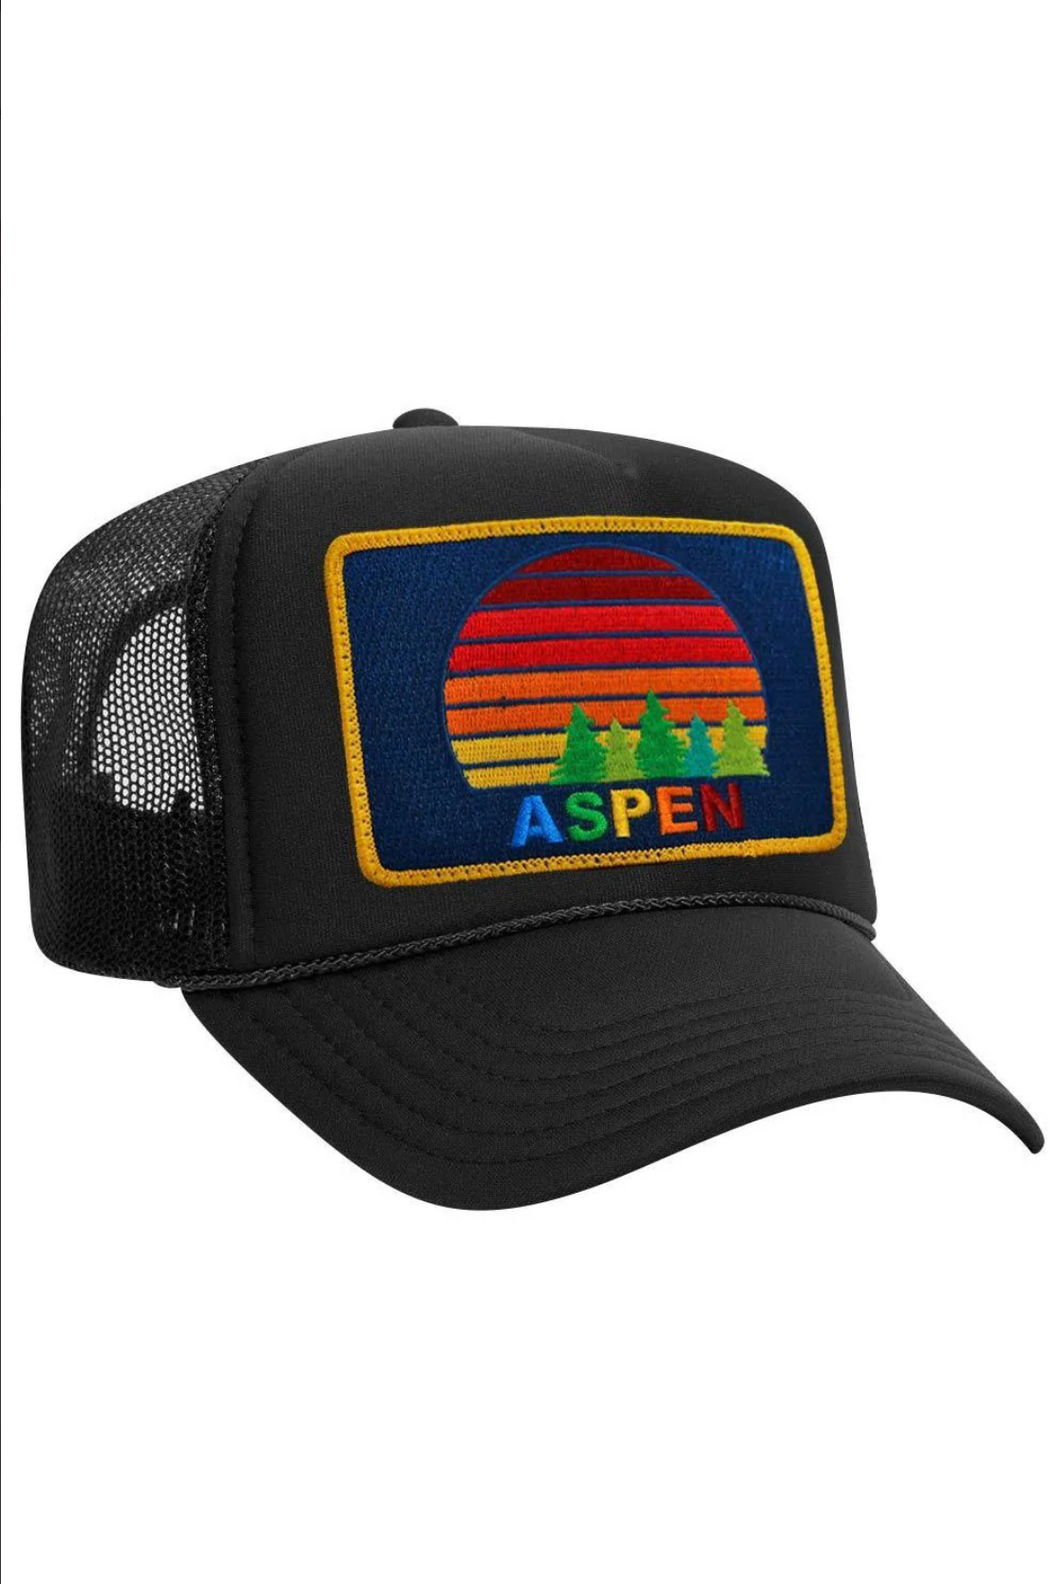 Aviator Nation Aspen Sunset Trucker Hat in Black